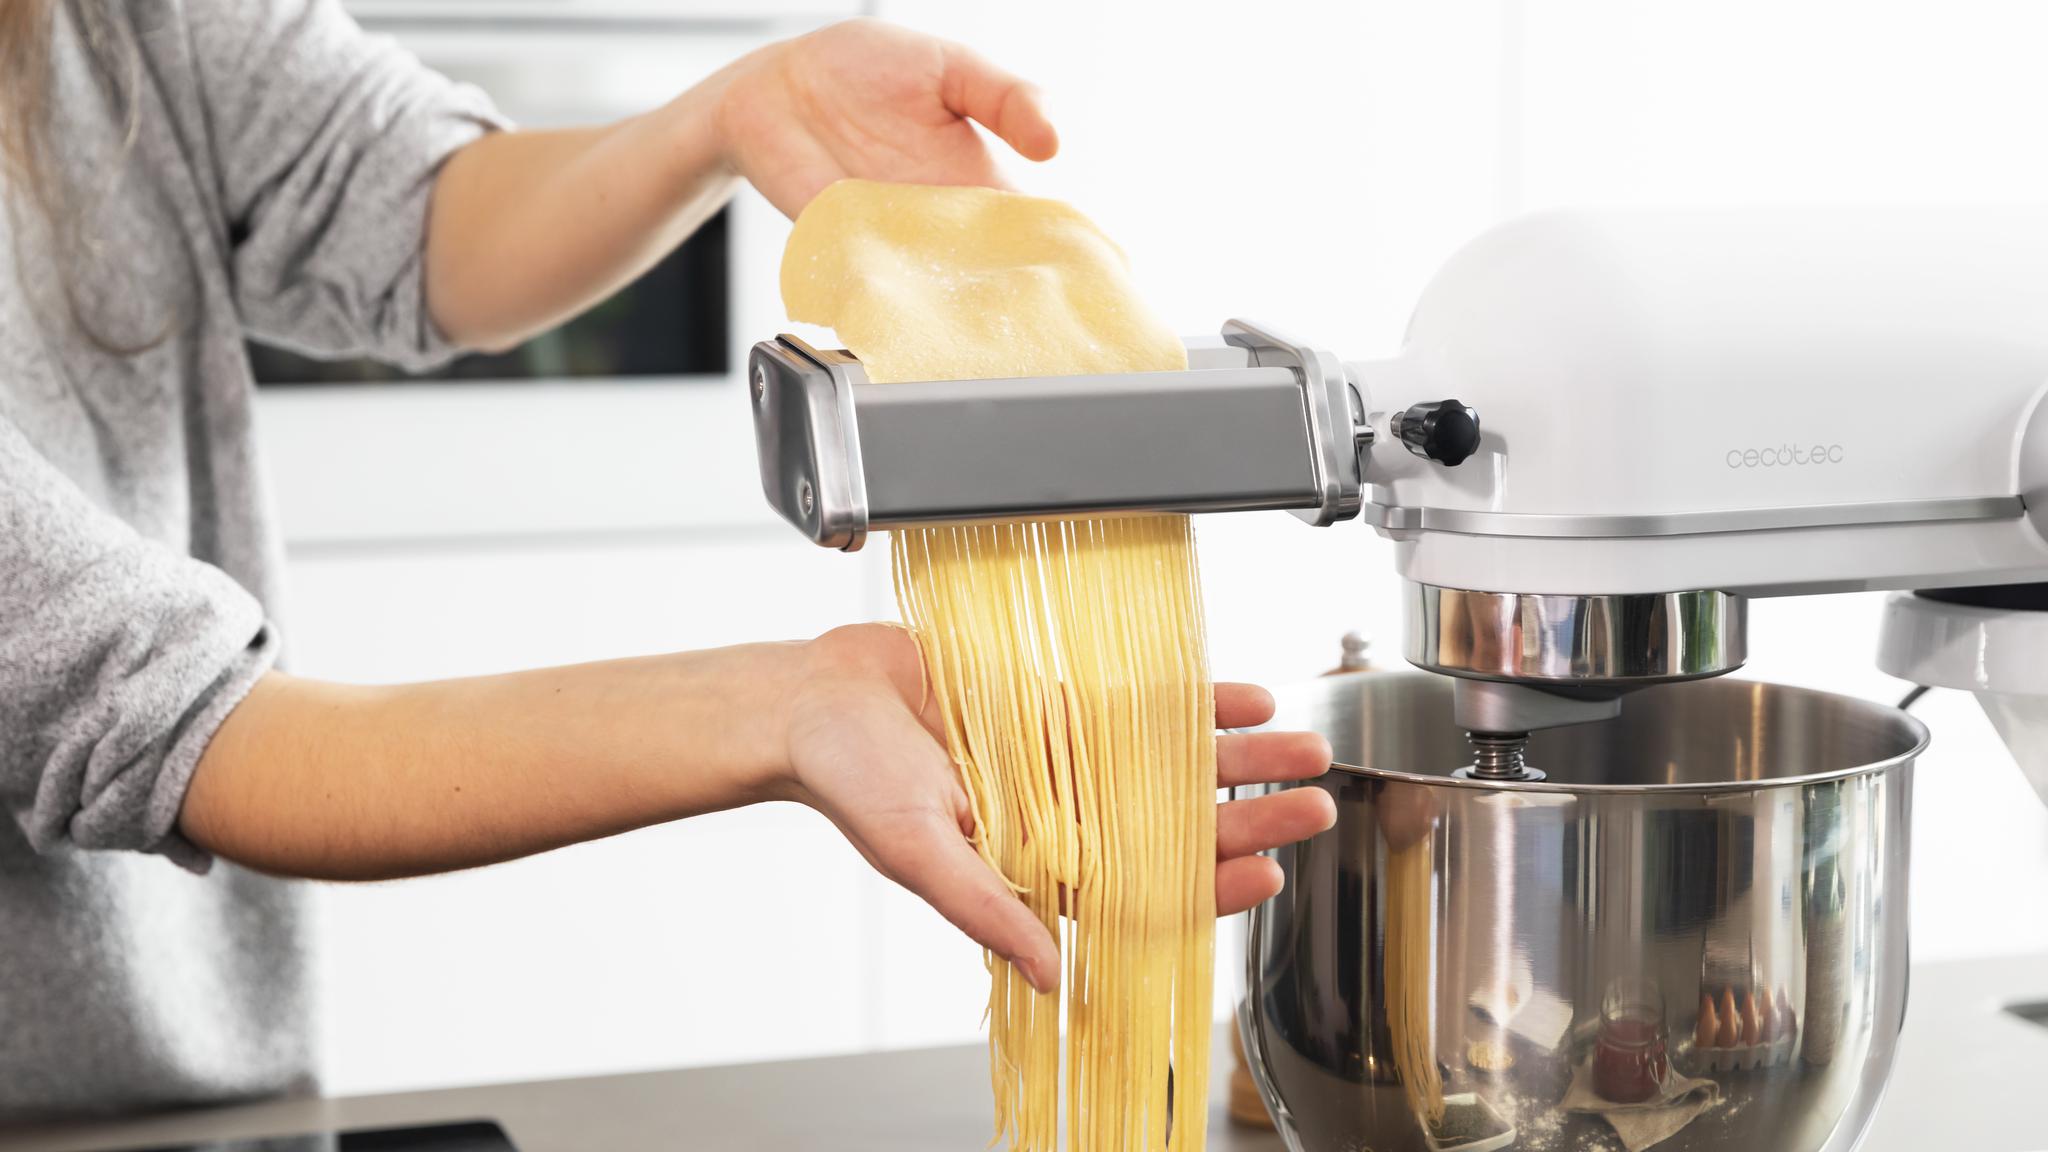 Prepara auténticos espaguetis frescos rápidamente